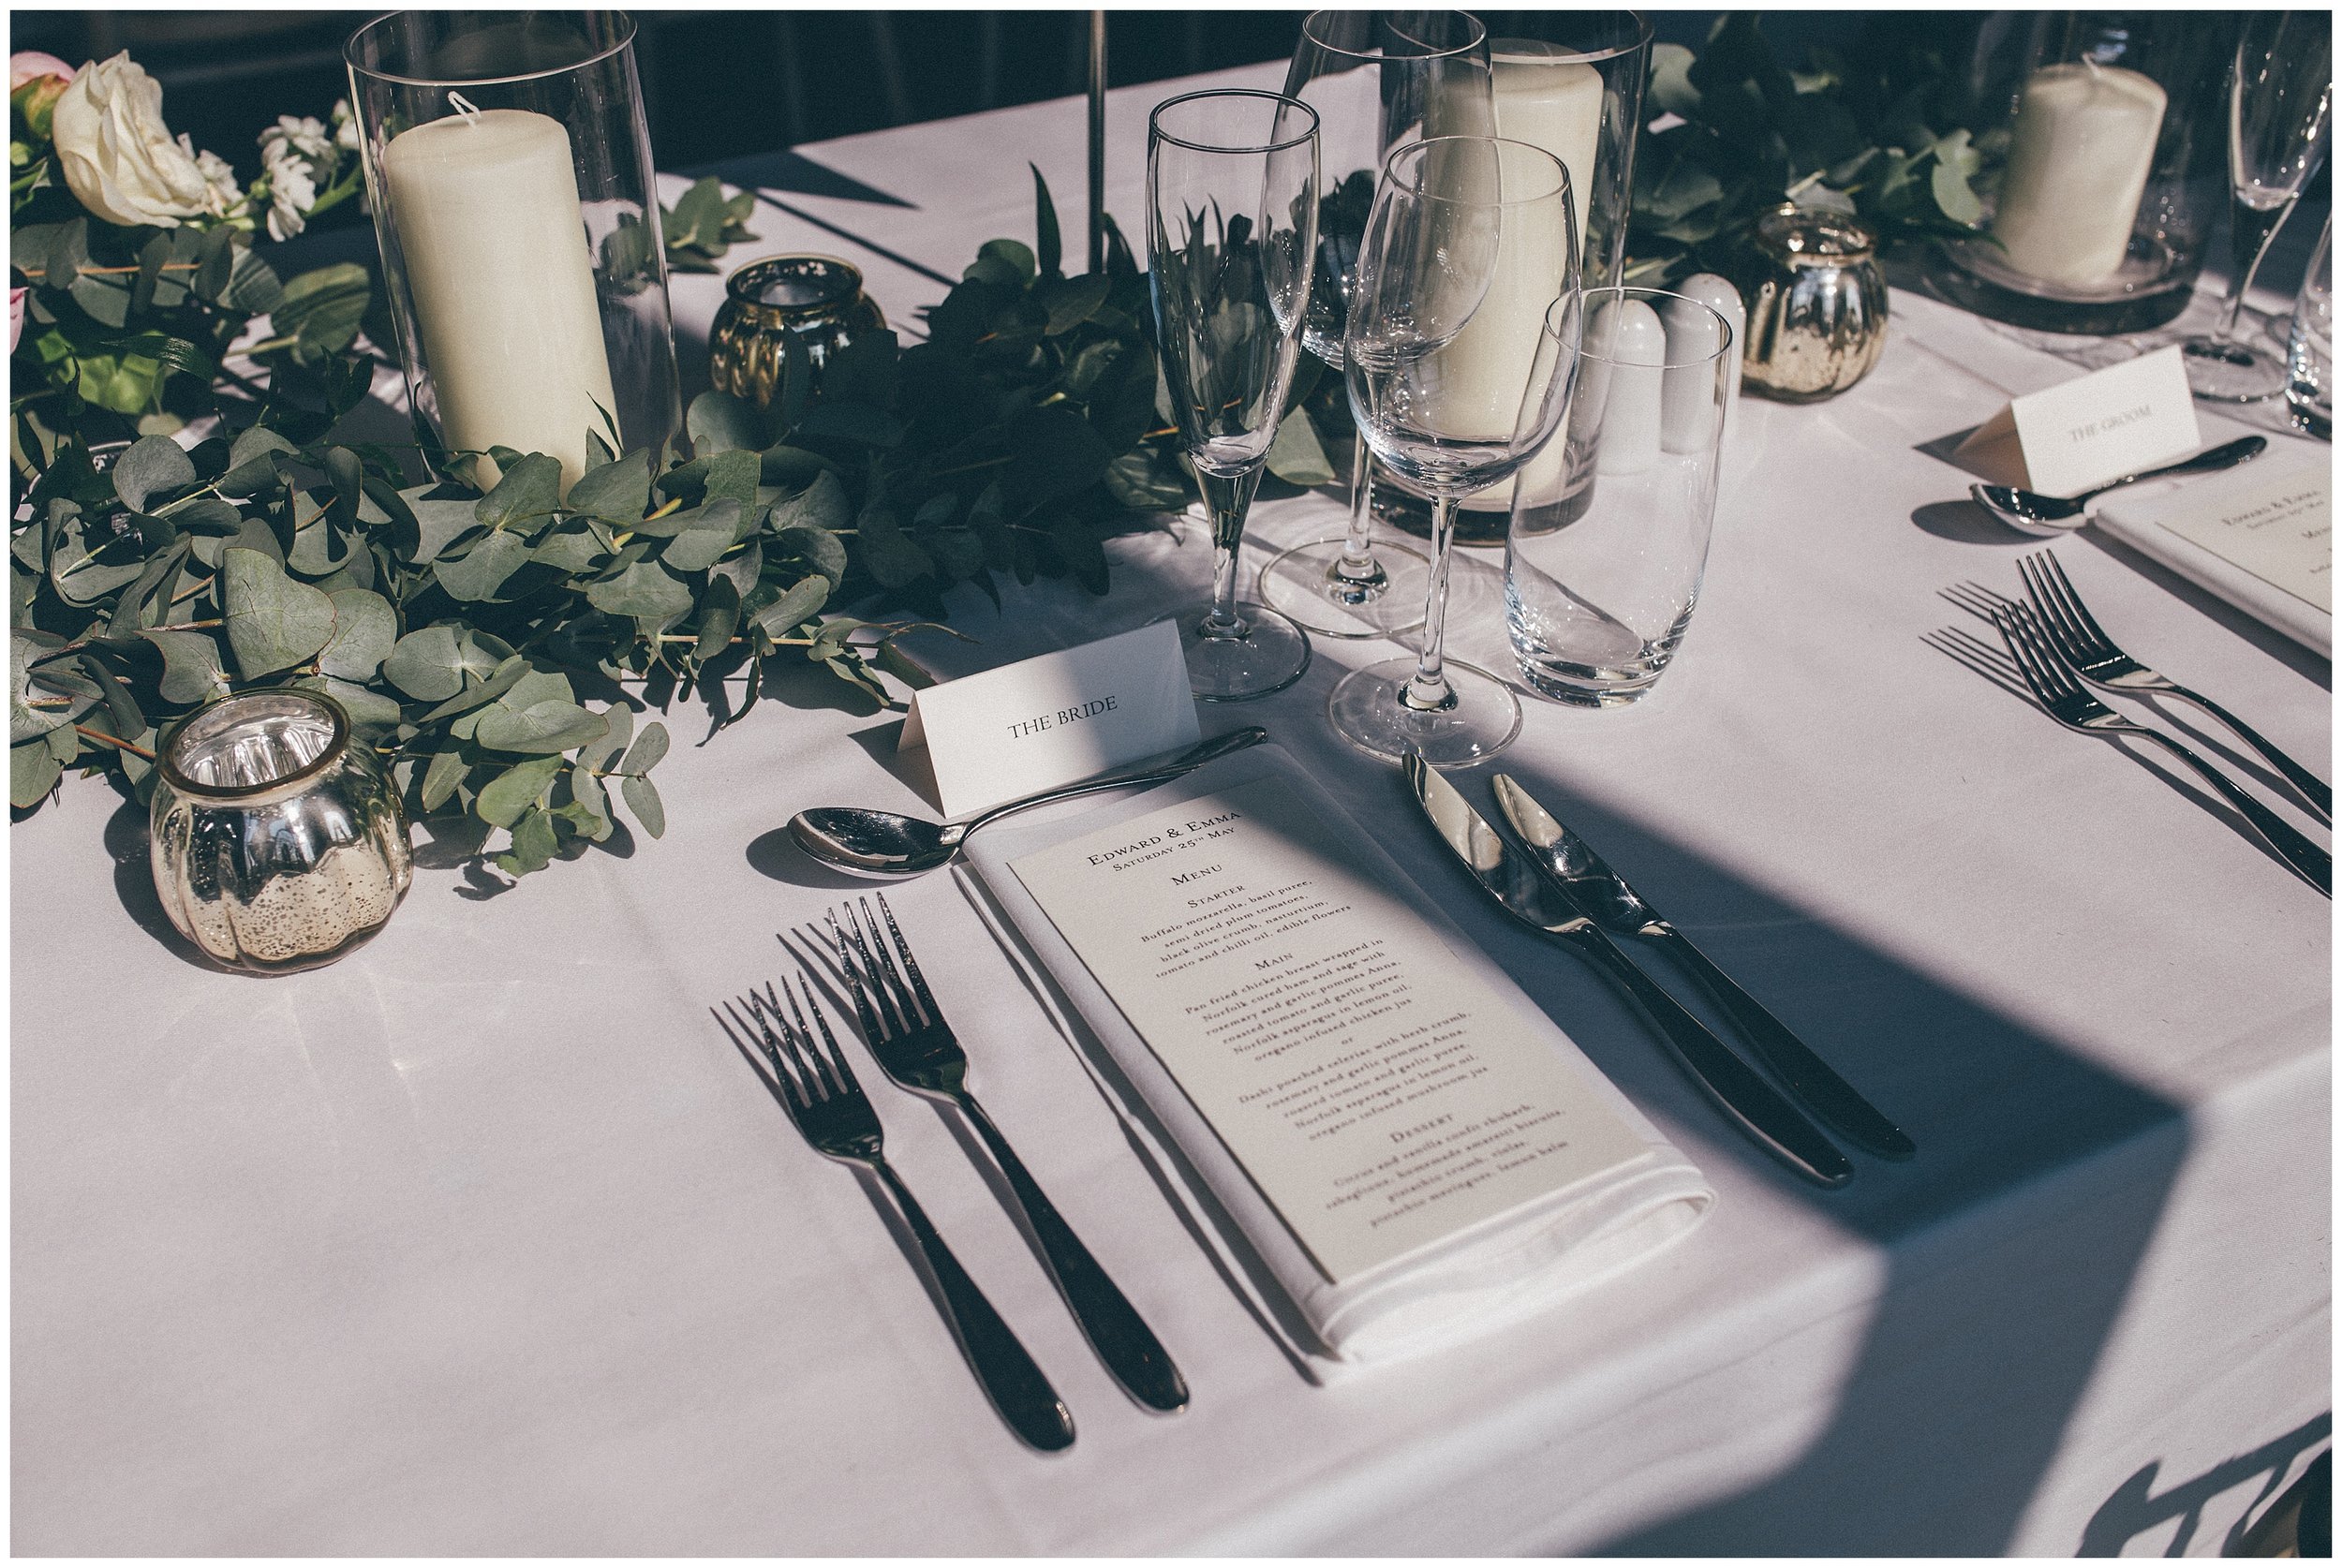 Bridal place setting at Stunning table details at Henham Park wedding barns.